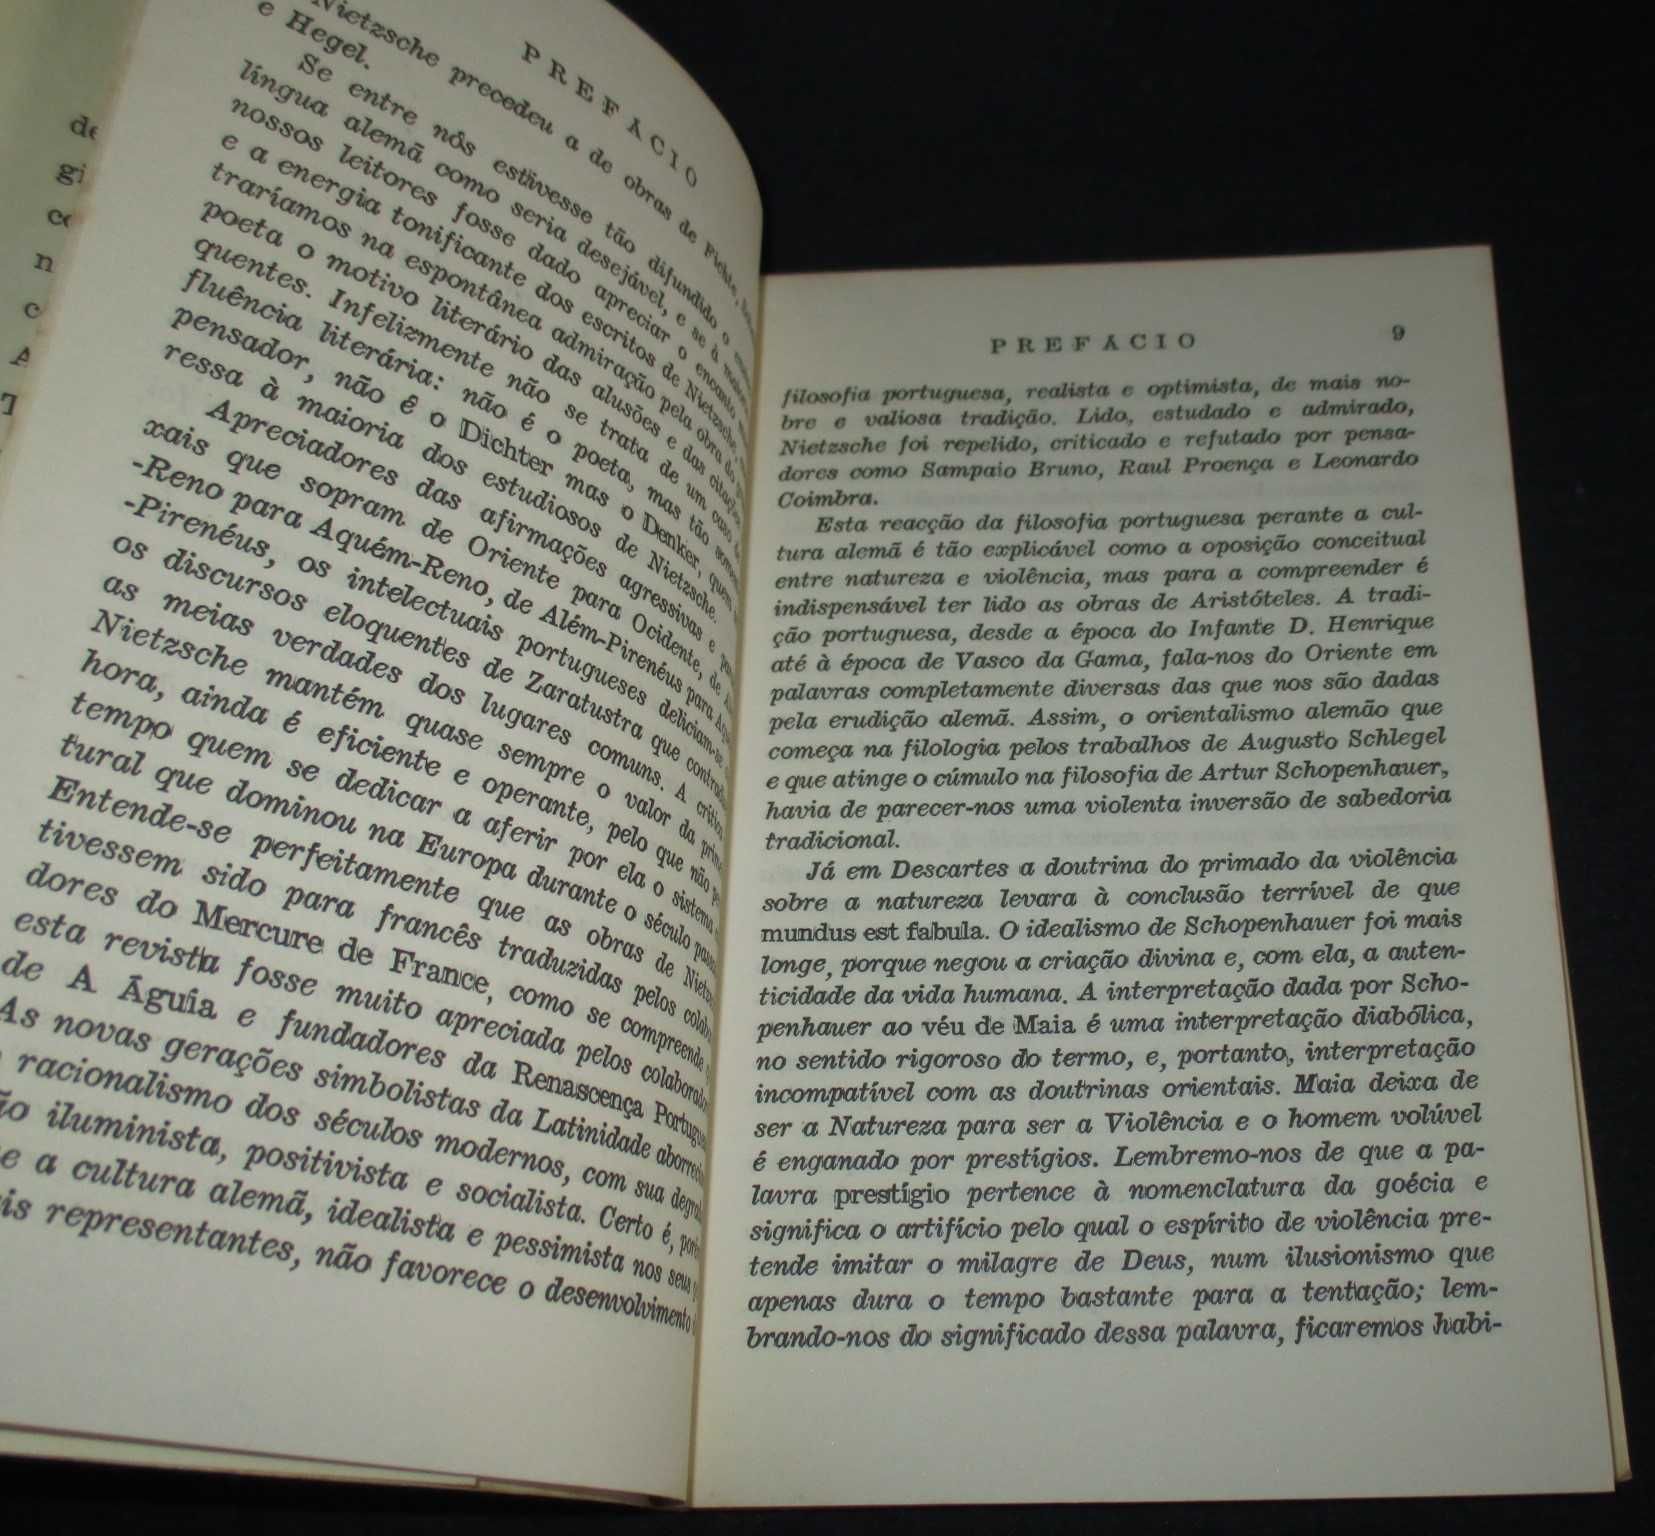 Livro Origem da Tragédia Nietzsche Guimarães